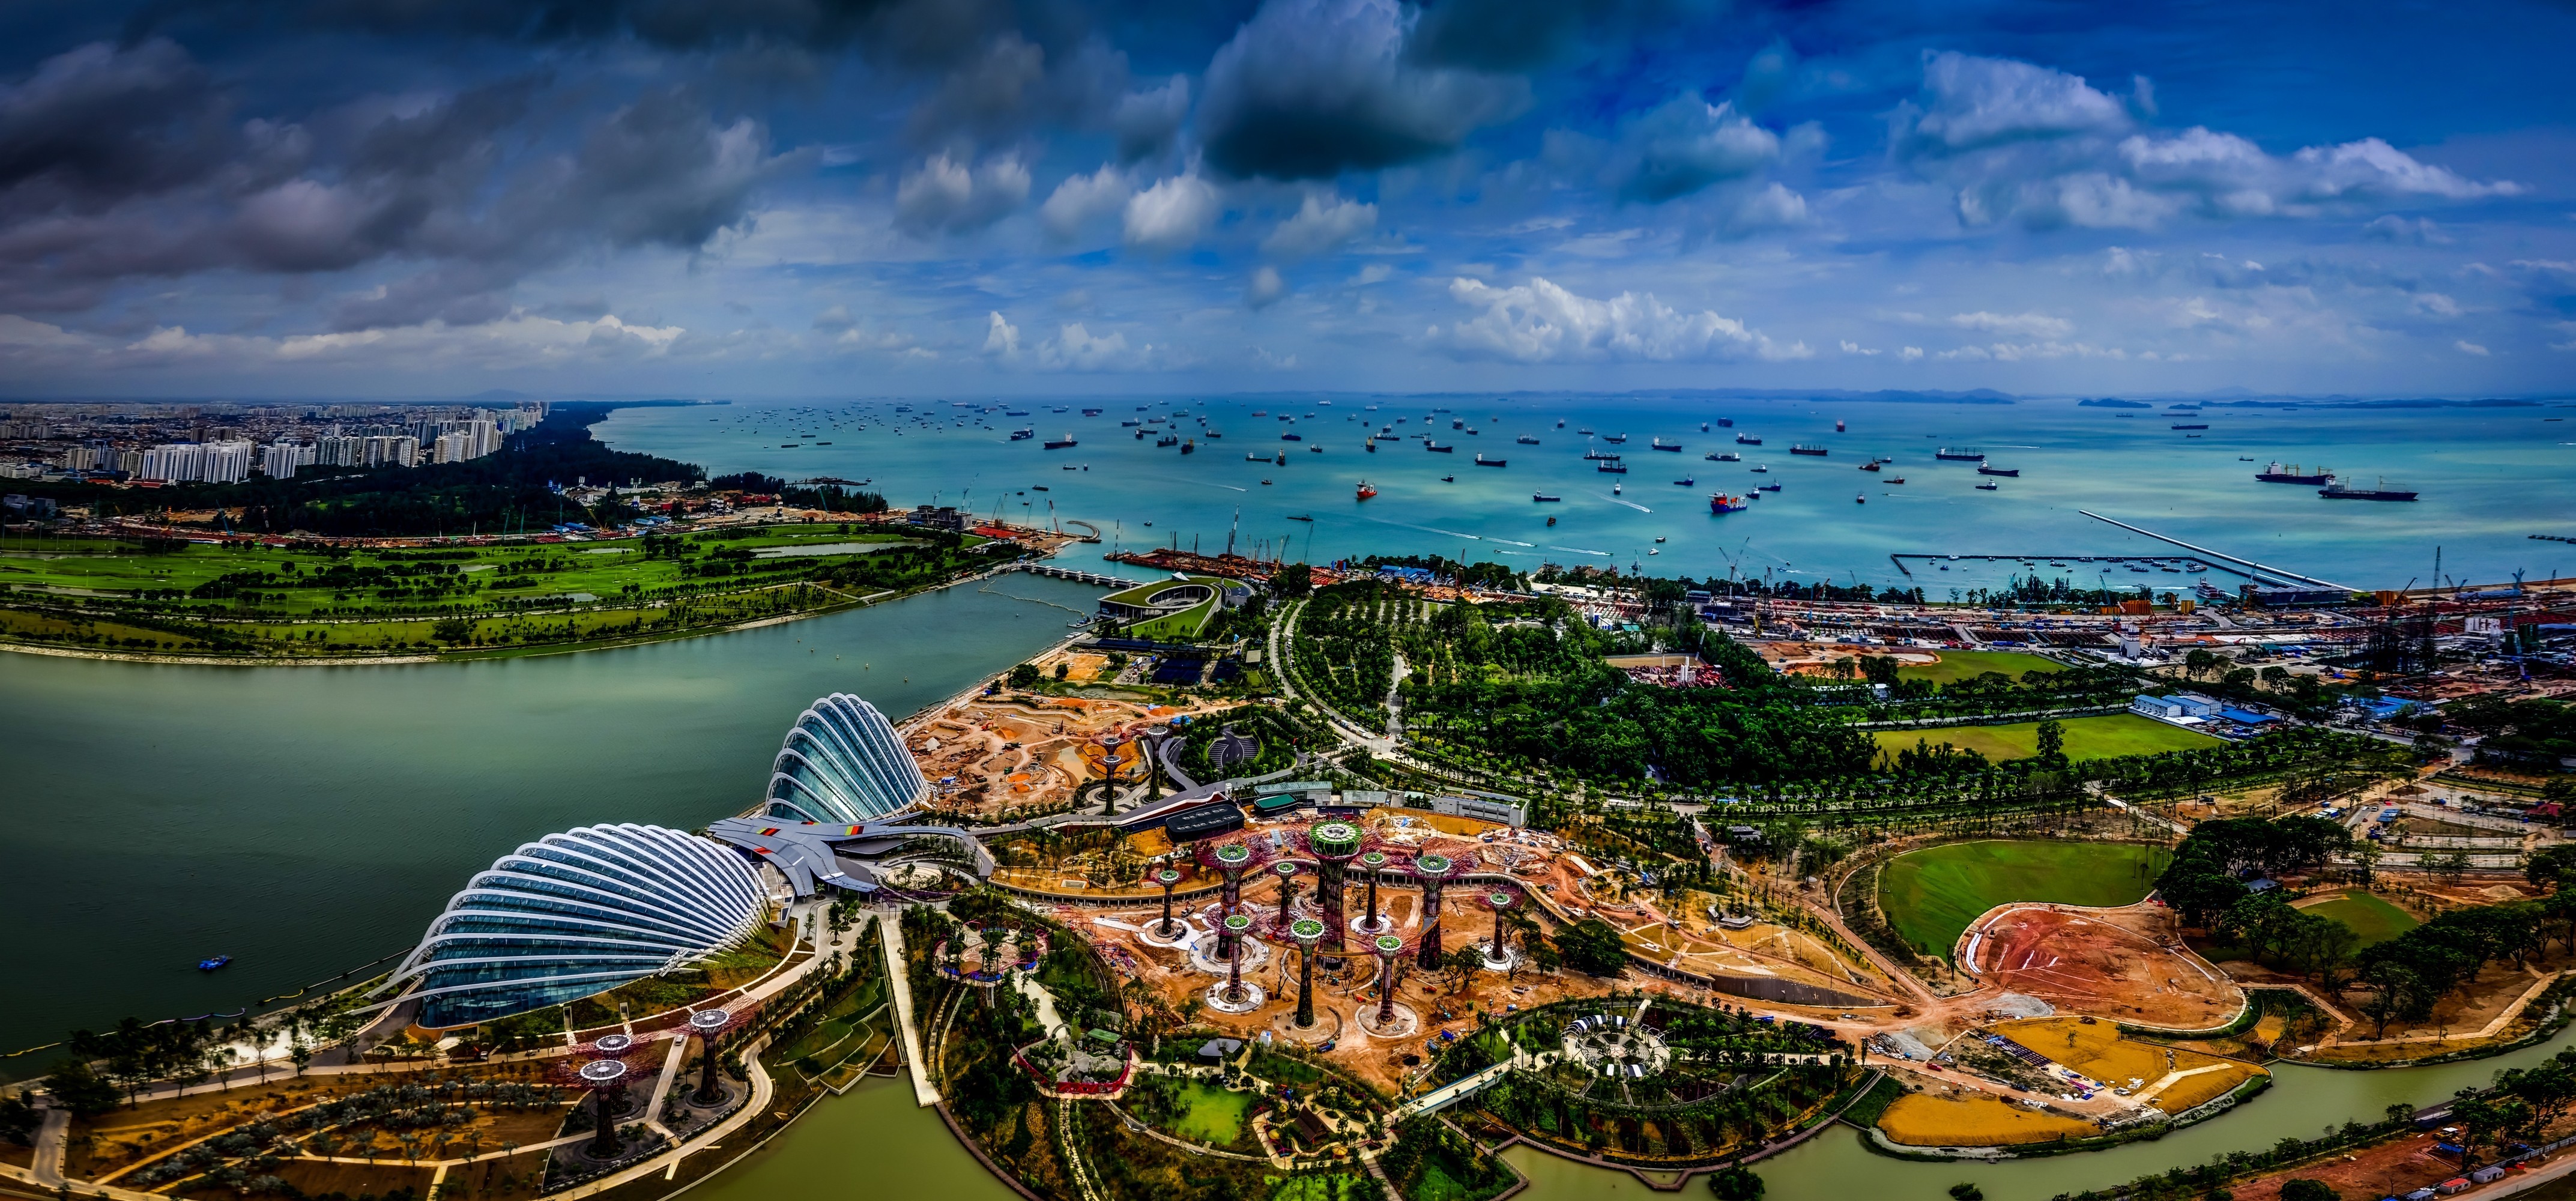 Скачать обои бесплатно Города, Сингапур, Сделано Человеком картинка на рабочий стол ПК